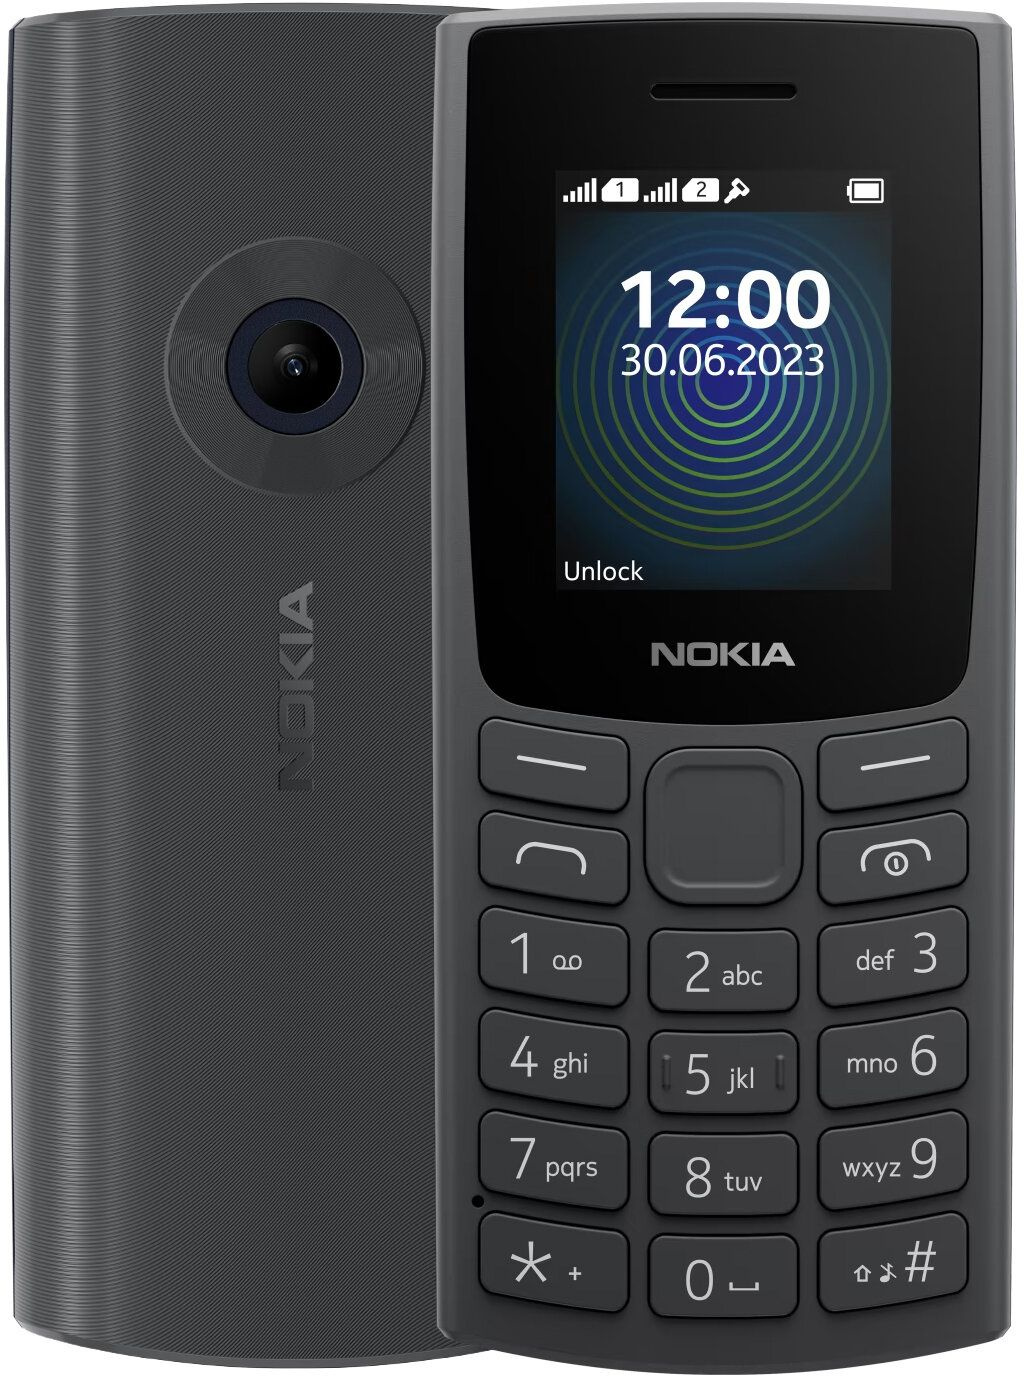 Мобильный телефон Nokia 110 (TA-1567) DS EAC 0.048 черный моноблок 3G 1.8" 240x320 Series 30+ 0.3Mpix GSM900/ 1800 MP3 (1GF019FPA2C02)